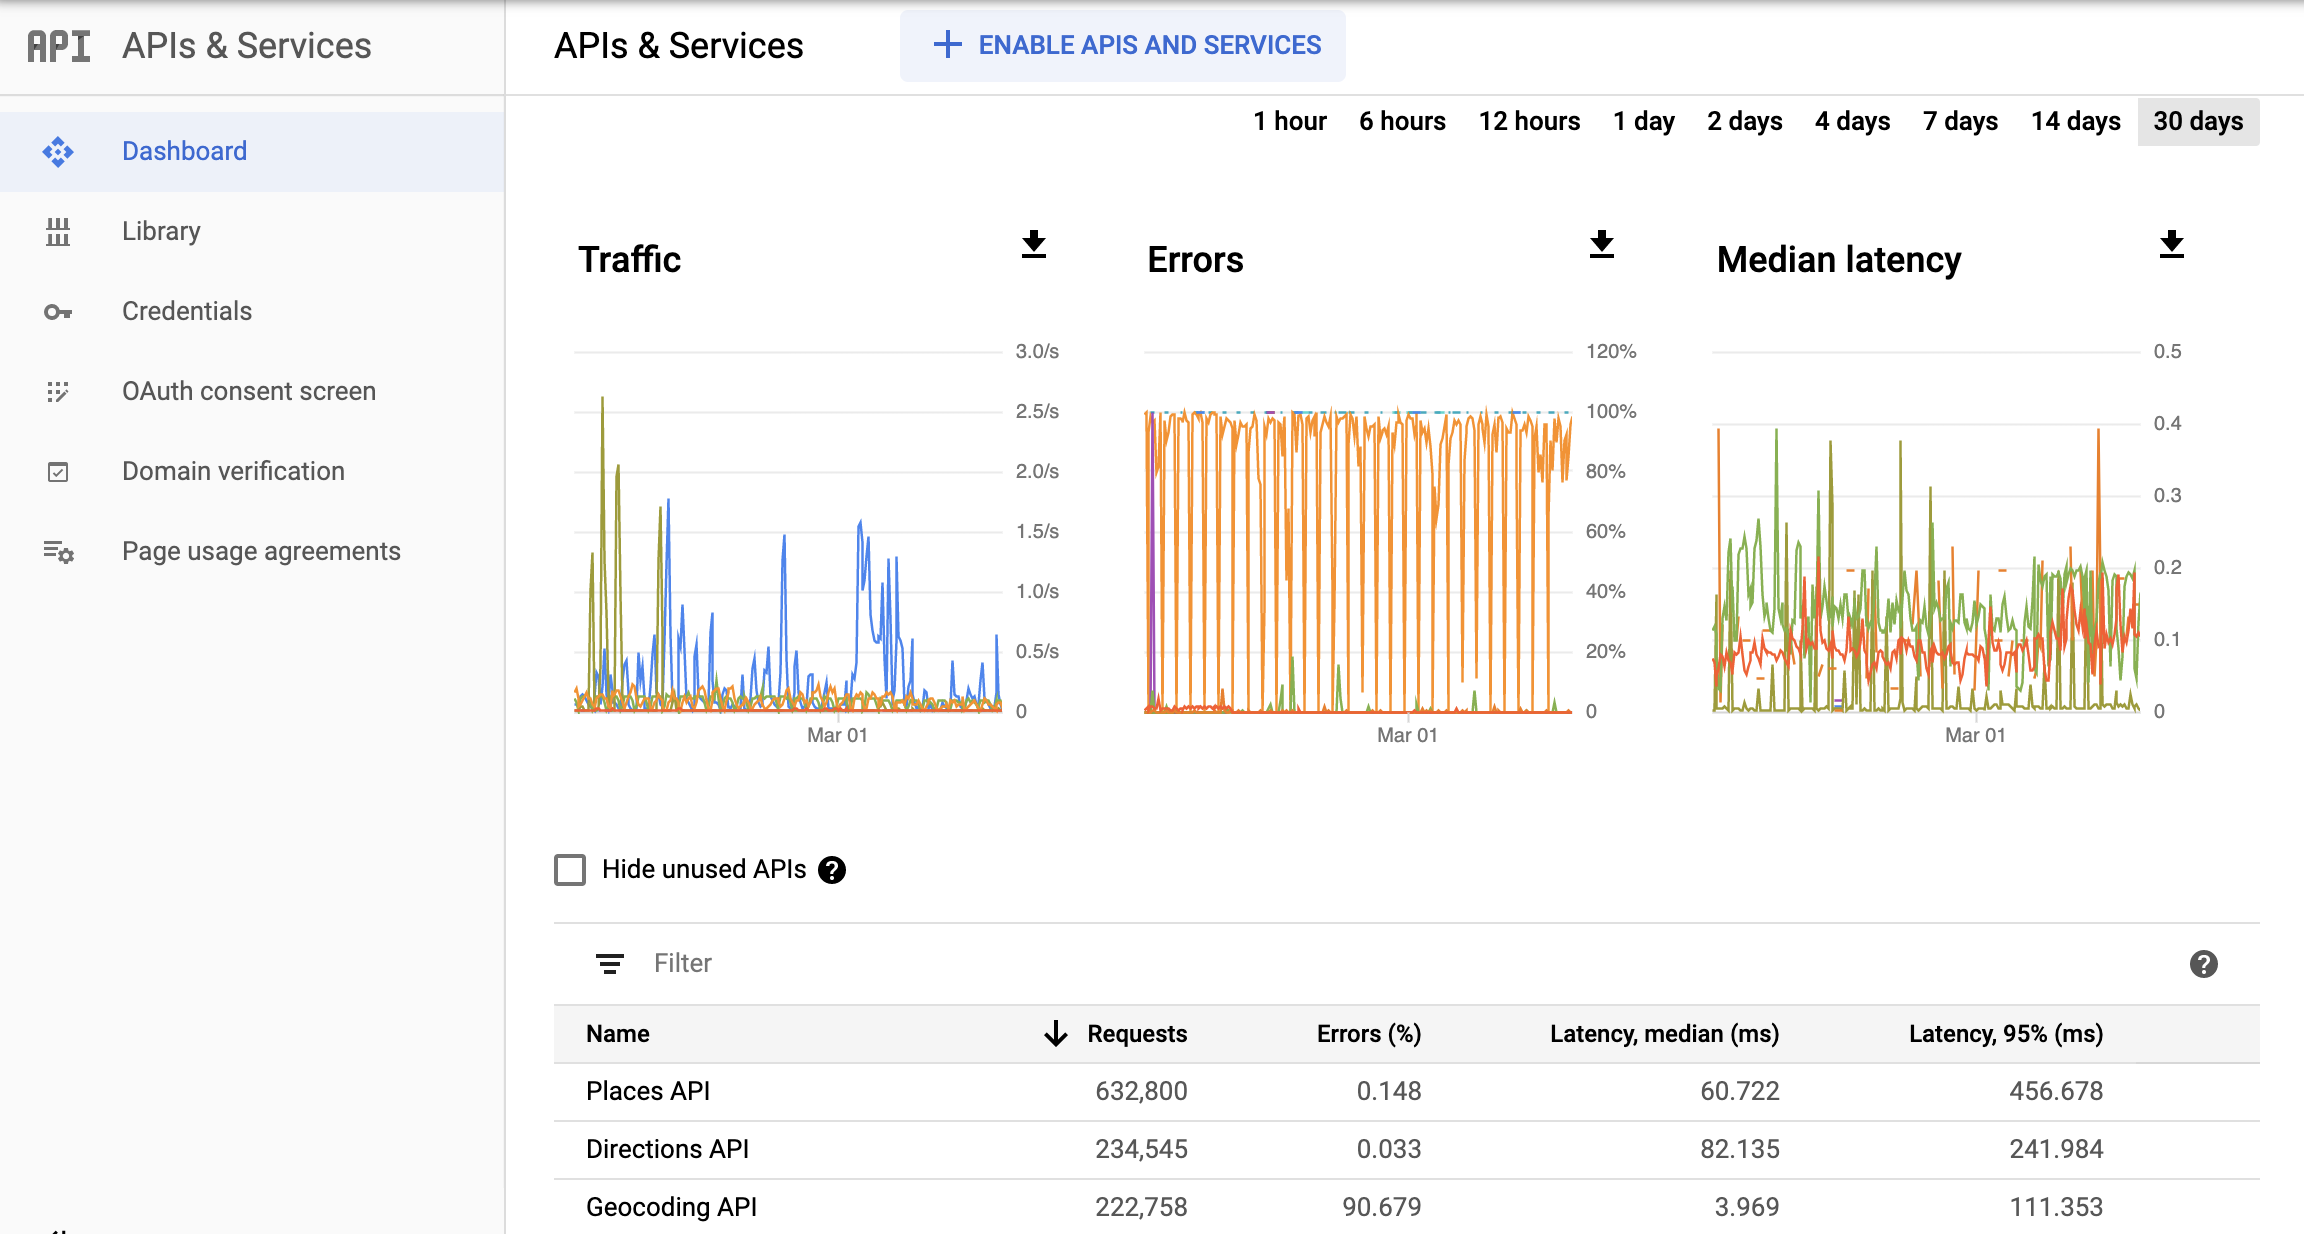 Screenshot halaman Monitoring API di Google Cloud Console, yang menampilkan dasbor laporan APIs & Services. Laporan ini menampilkan diagram terpisah untuk Traffic, Error, dan Median Latency. Diagram ini
  dapat menampilkan data dari rentang waktu satu jam hingga 30 hari.